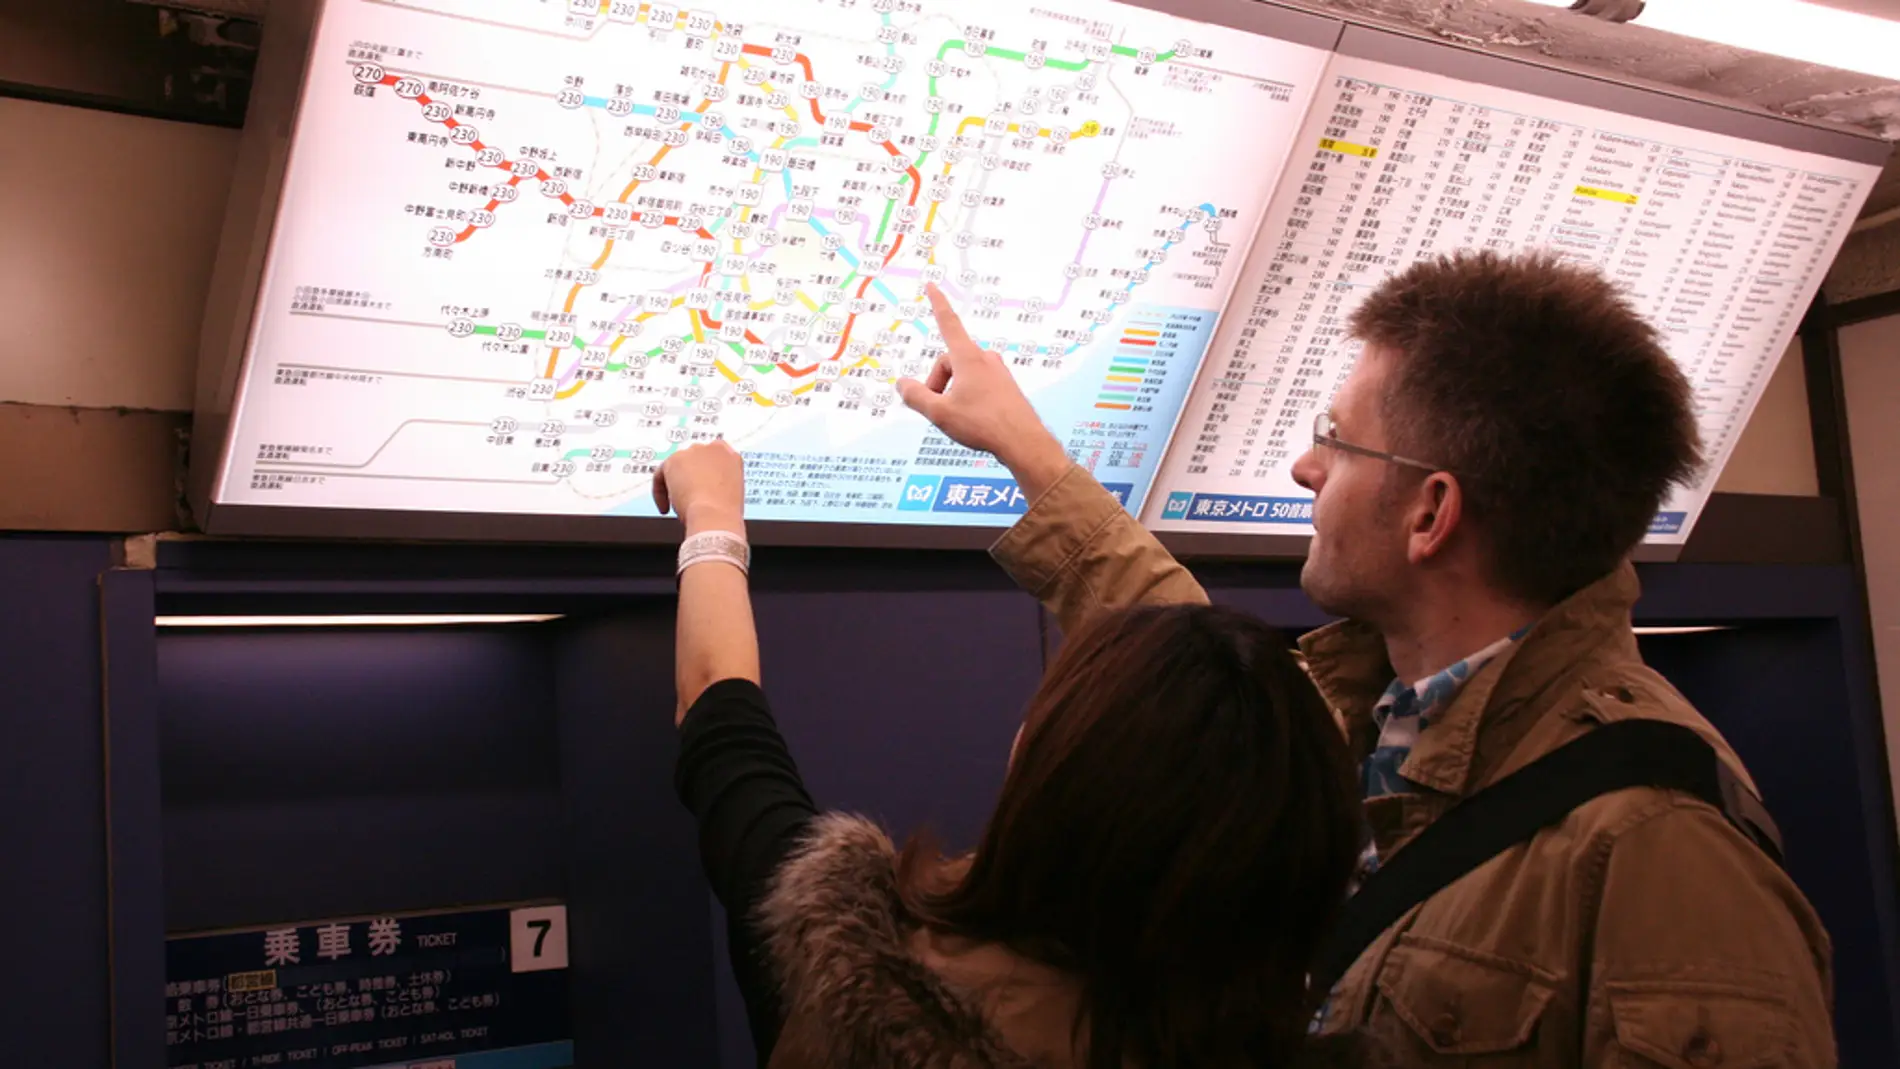 Los mapas de metro son tan incomprensibles que parecen estar en otro idioma